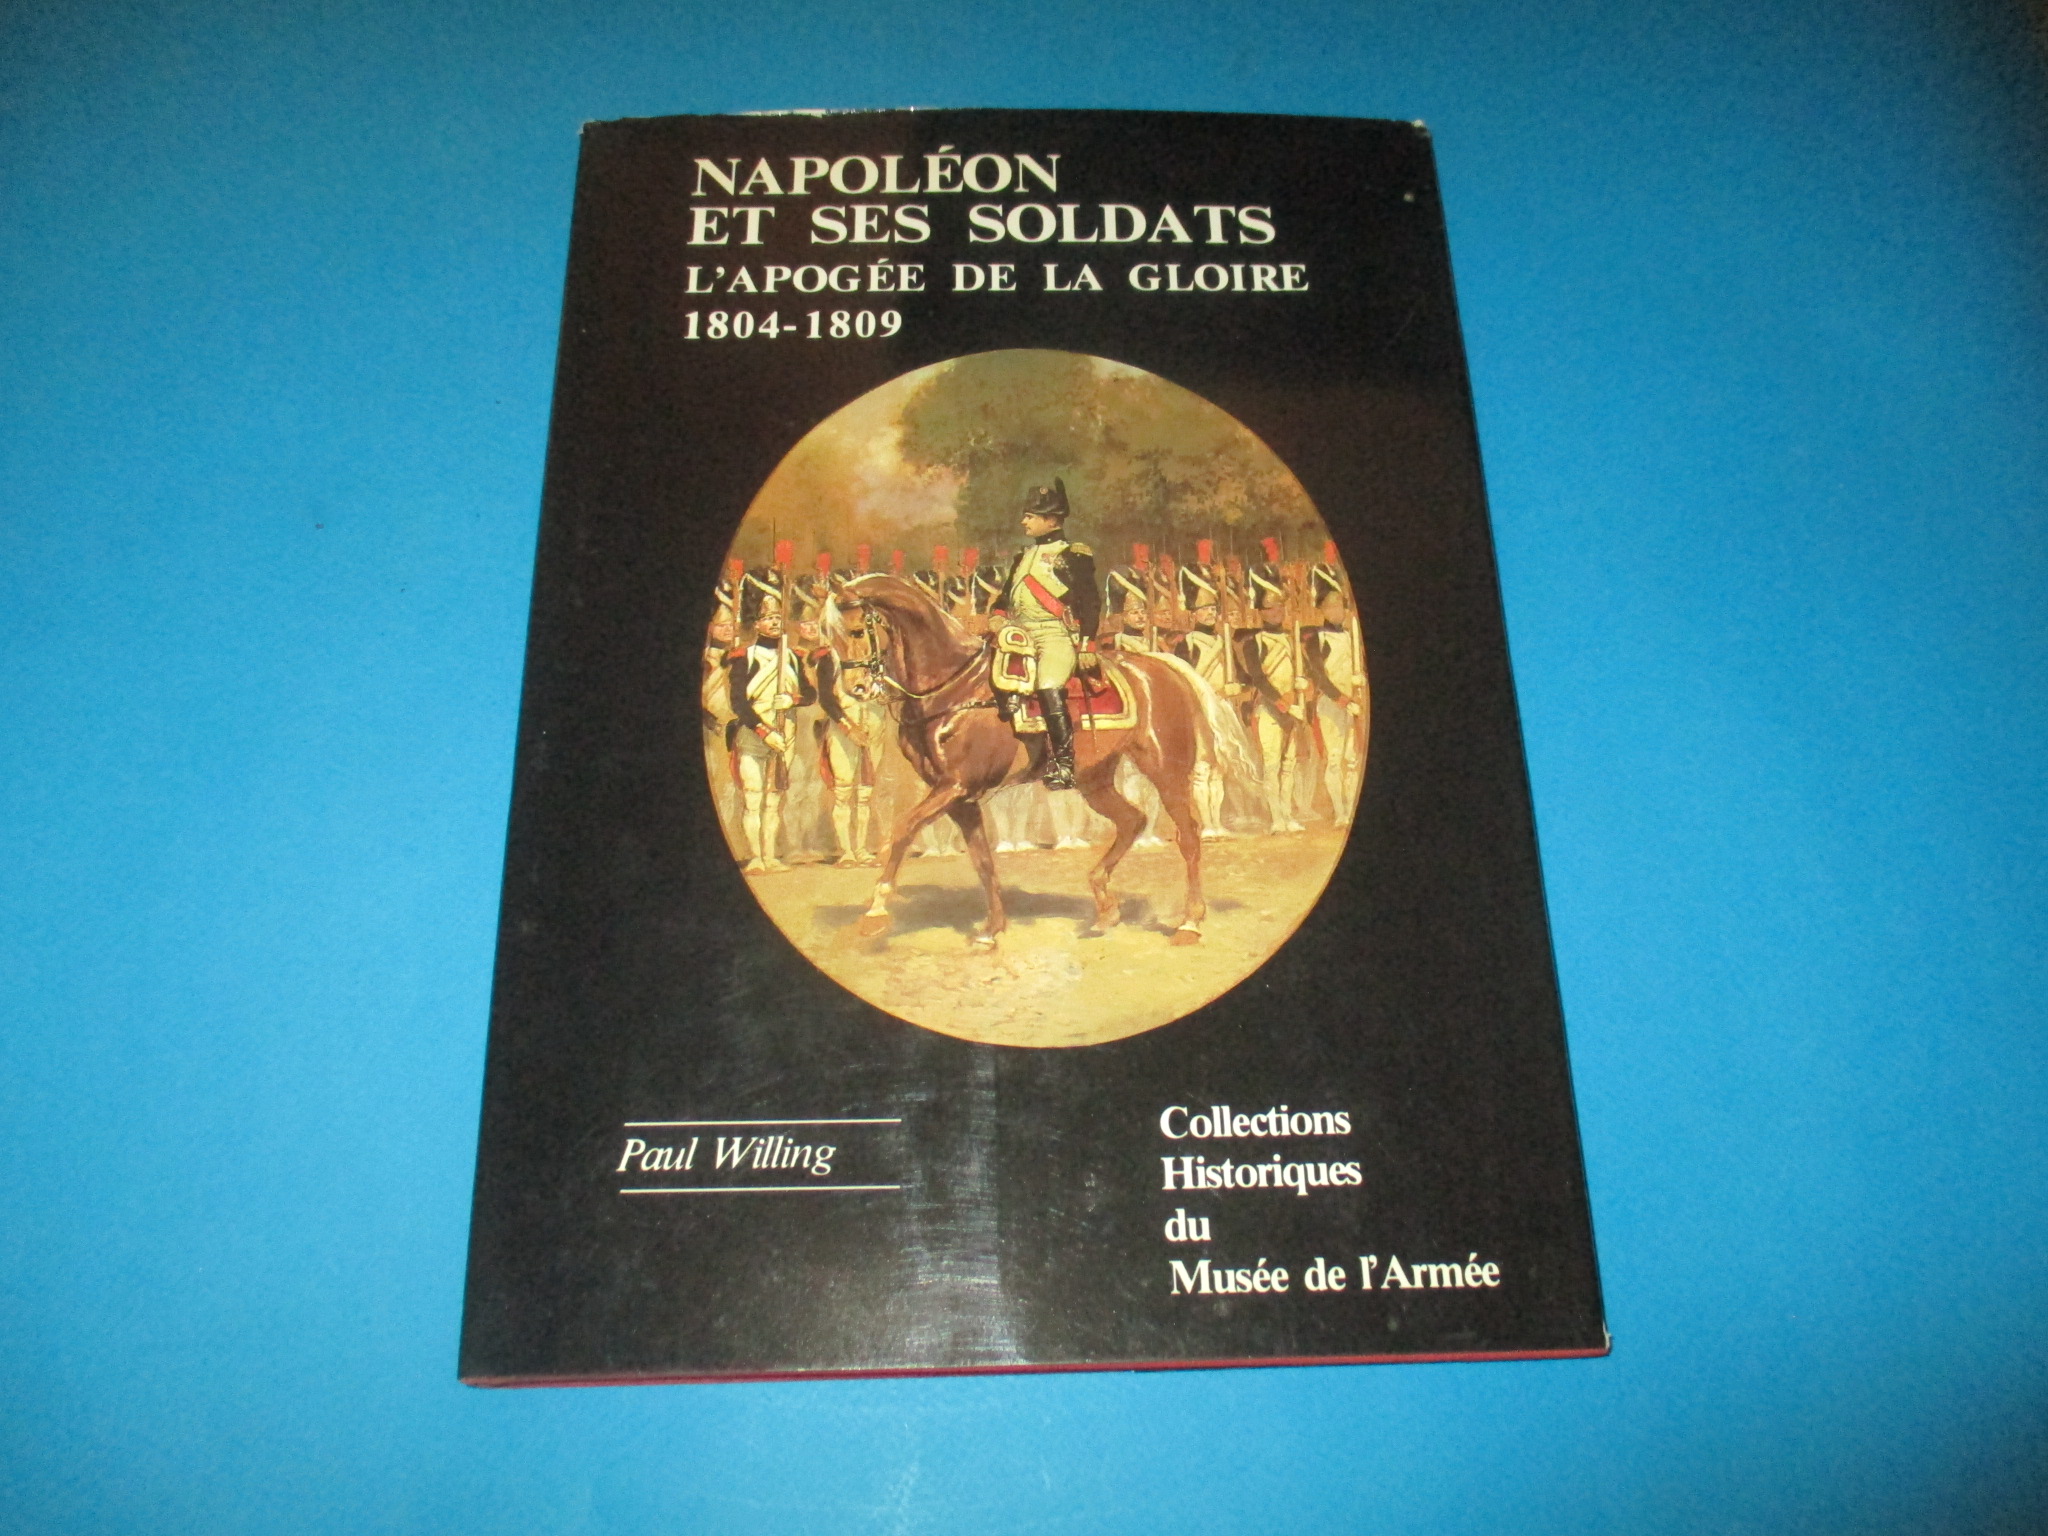 Napoléon et ses soldats, L\'Apogée de la Gloire 1804-1809, Colonel Paul Willing, Collections Historiques du Musée de l\'Armée